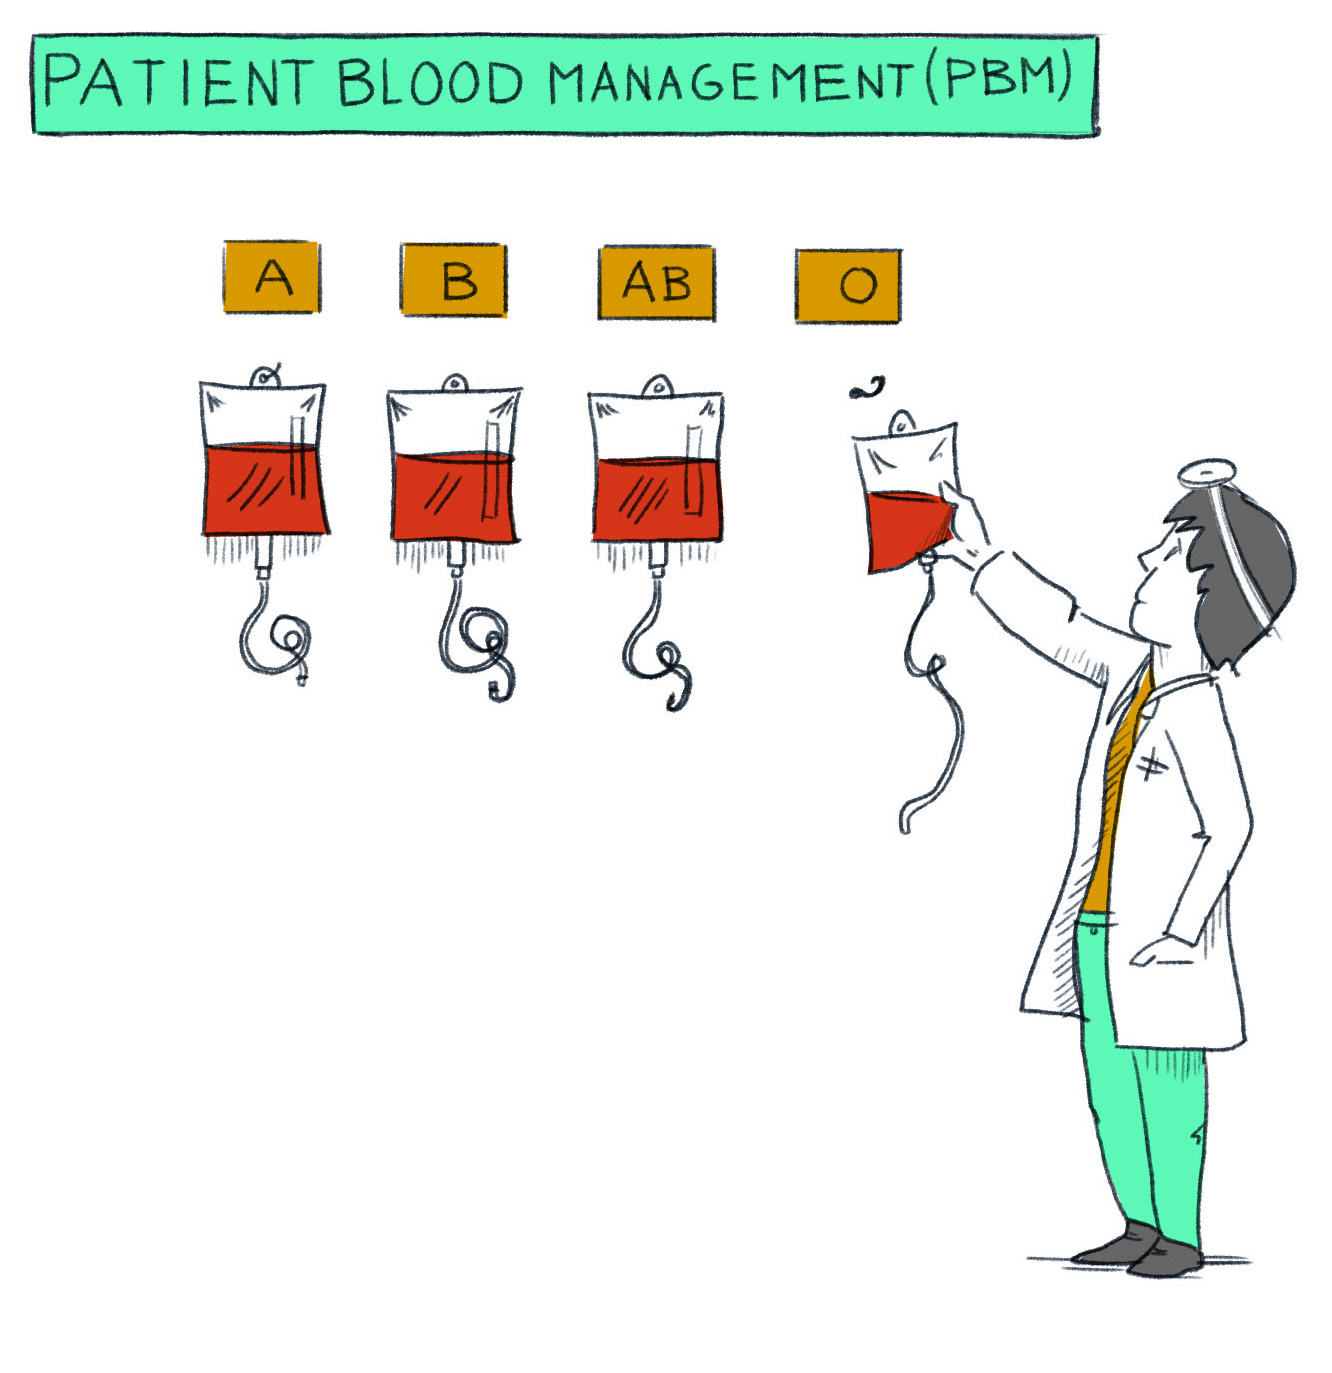 Illustration: Arzt greift zu einer Blutkonserve Bluttgrupe 0 an der Wand weitere Blutgruppen A B AB, Patient Blood Management (PBM)